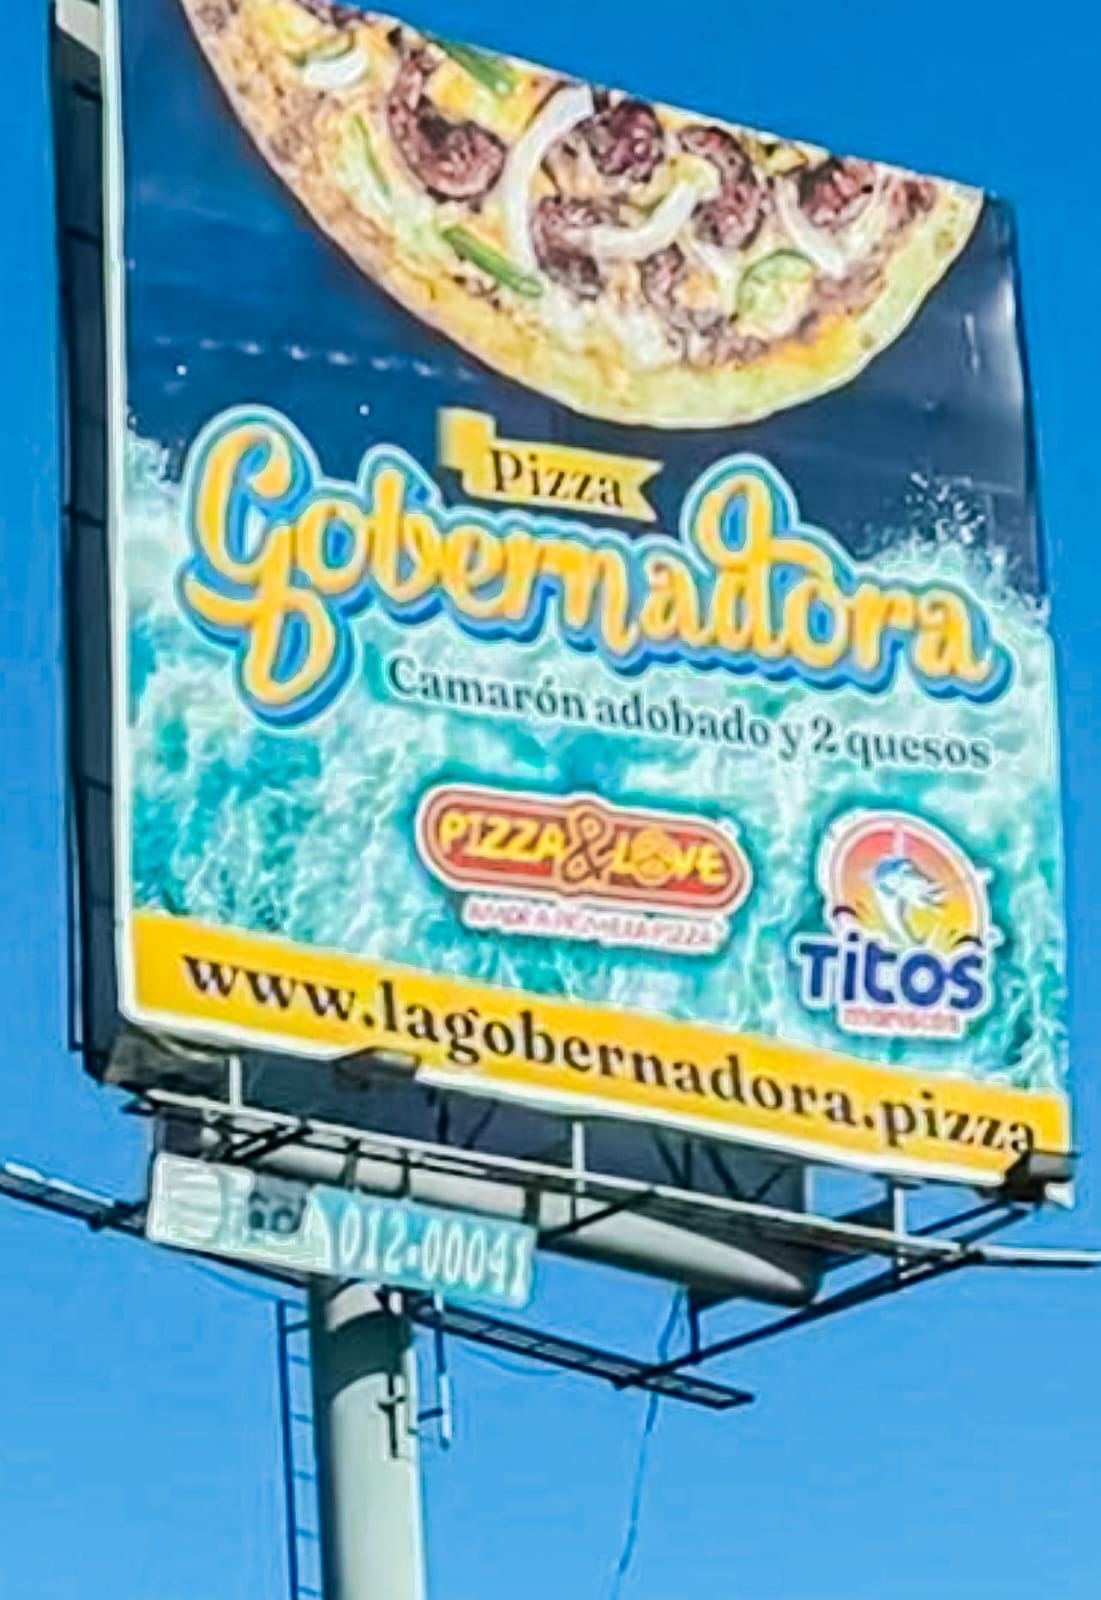 CREAN PIZZA GOBERNADORA EN BAJA CALIFORNIA